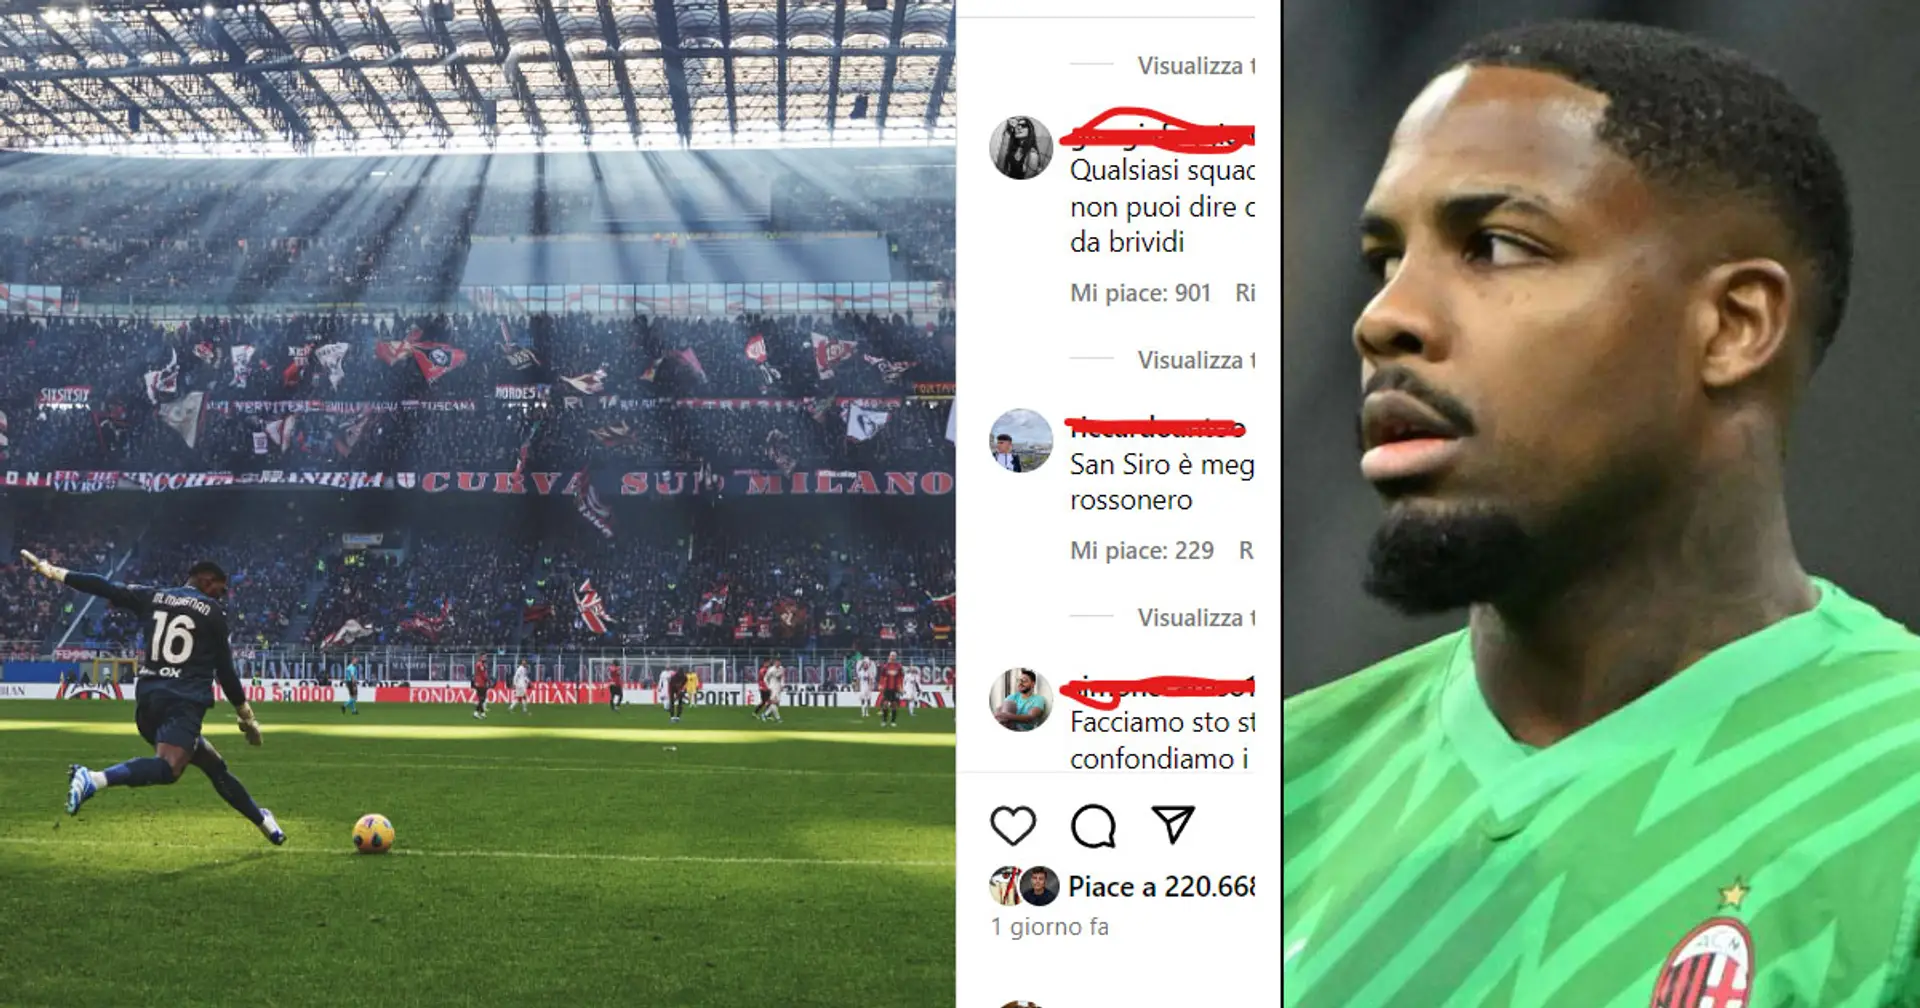 "Qualsiasi squadra tu tifi non puoi dire che sta foto non sia da brividi", il post di Maignan scatena i tifosi del Milan